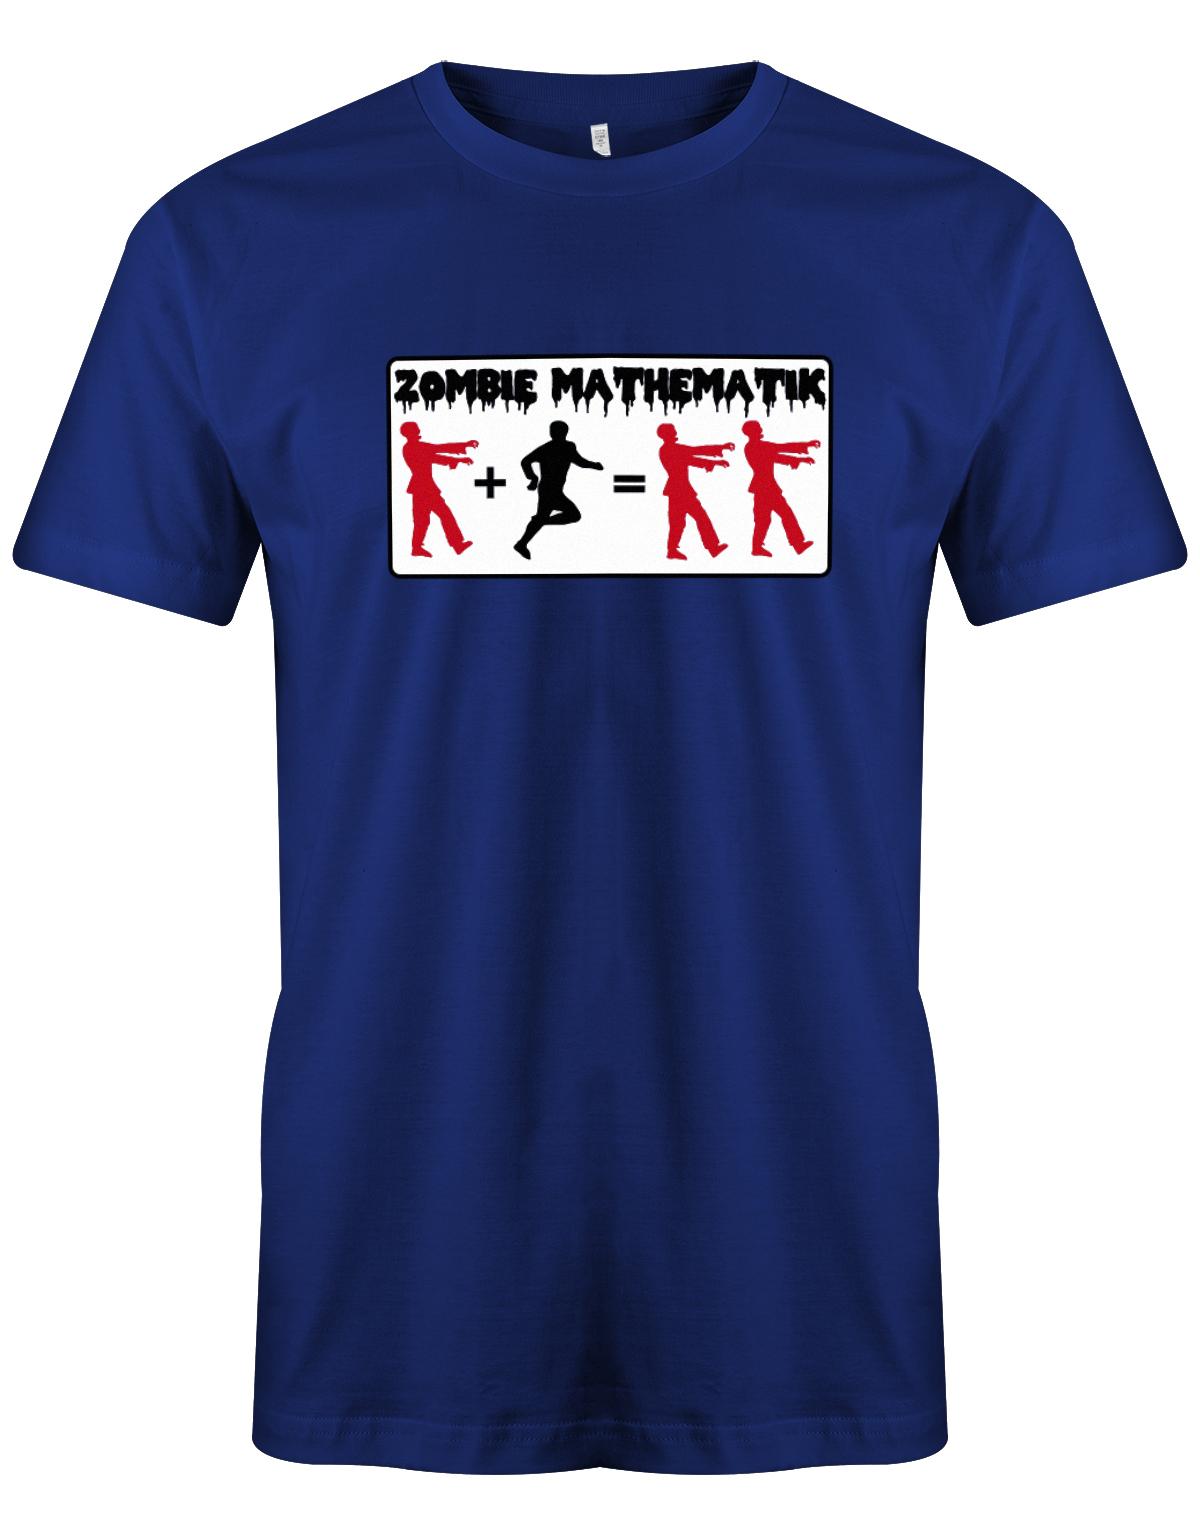 Zombie-Mathematik-Halloween-Shirt-Herren-Royalblau